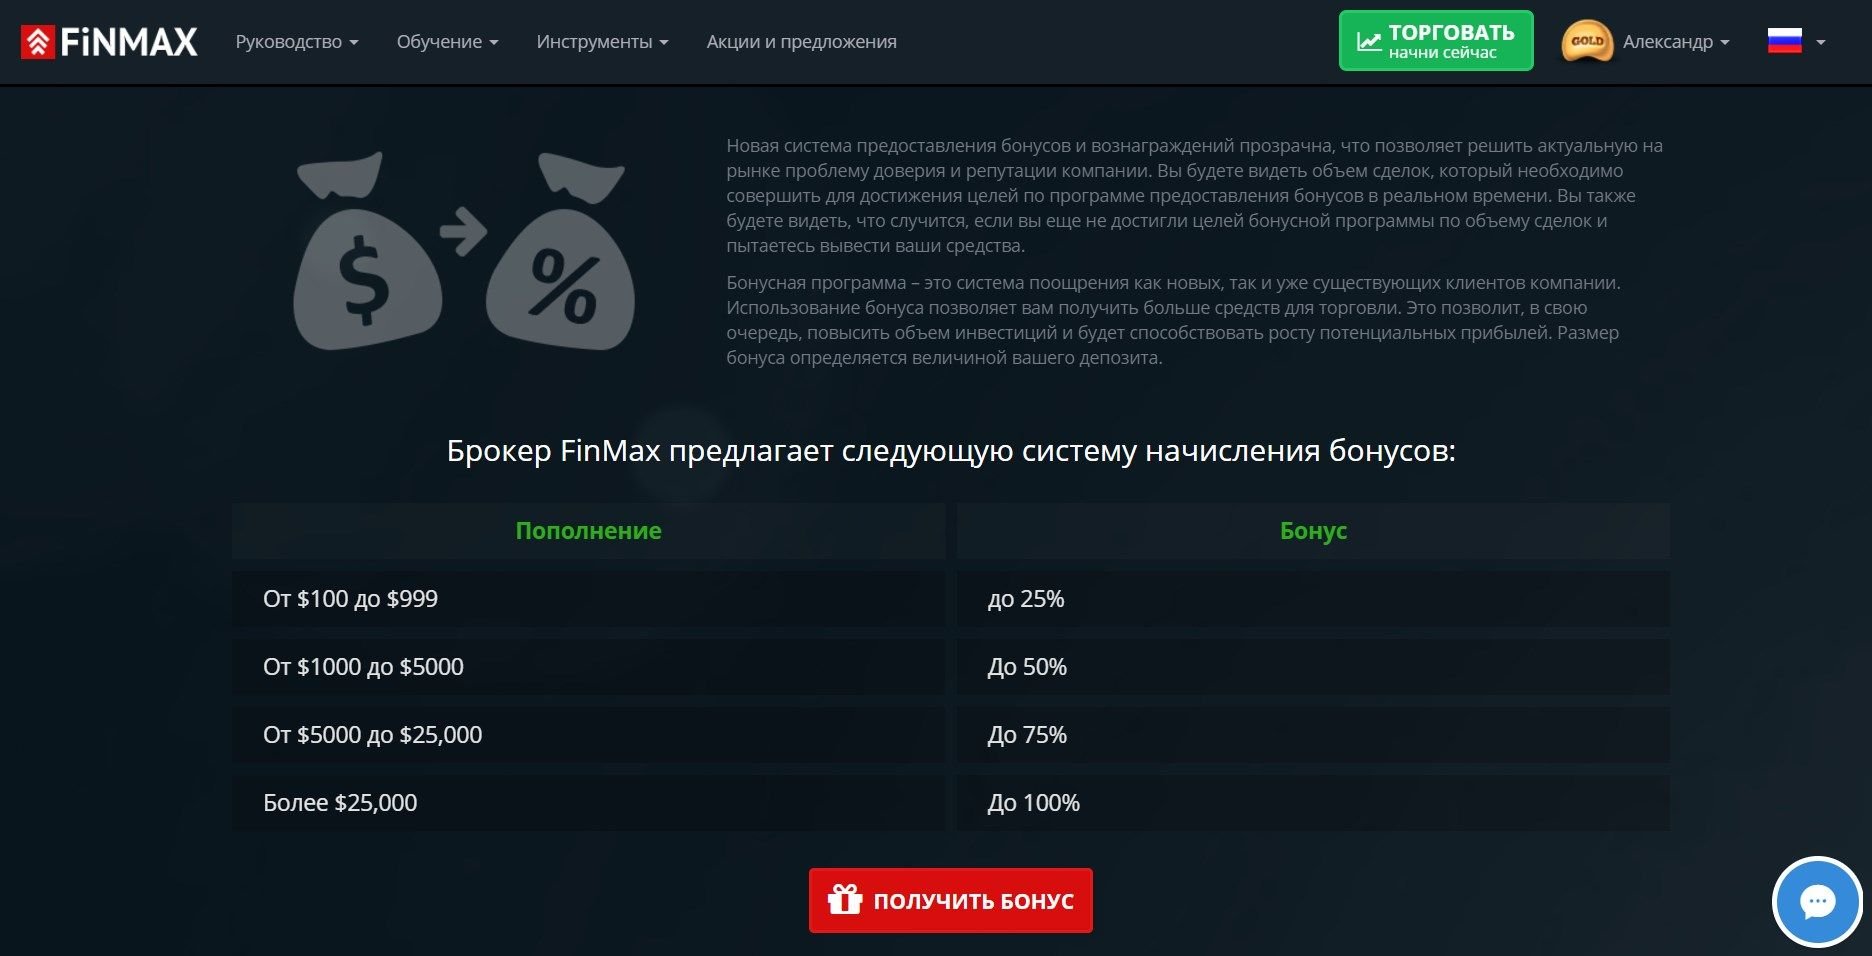 Официальный сайт FiNMAX предлагает своим пользователям акции